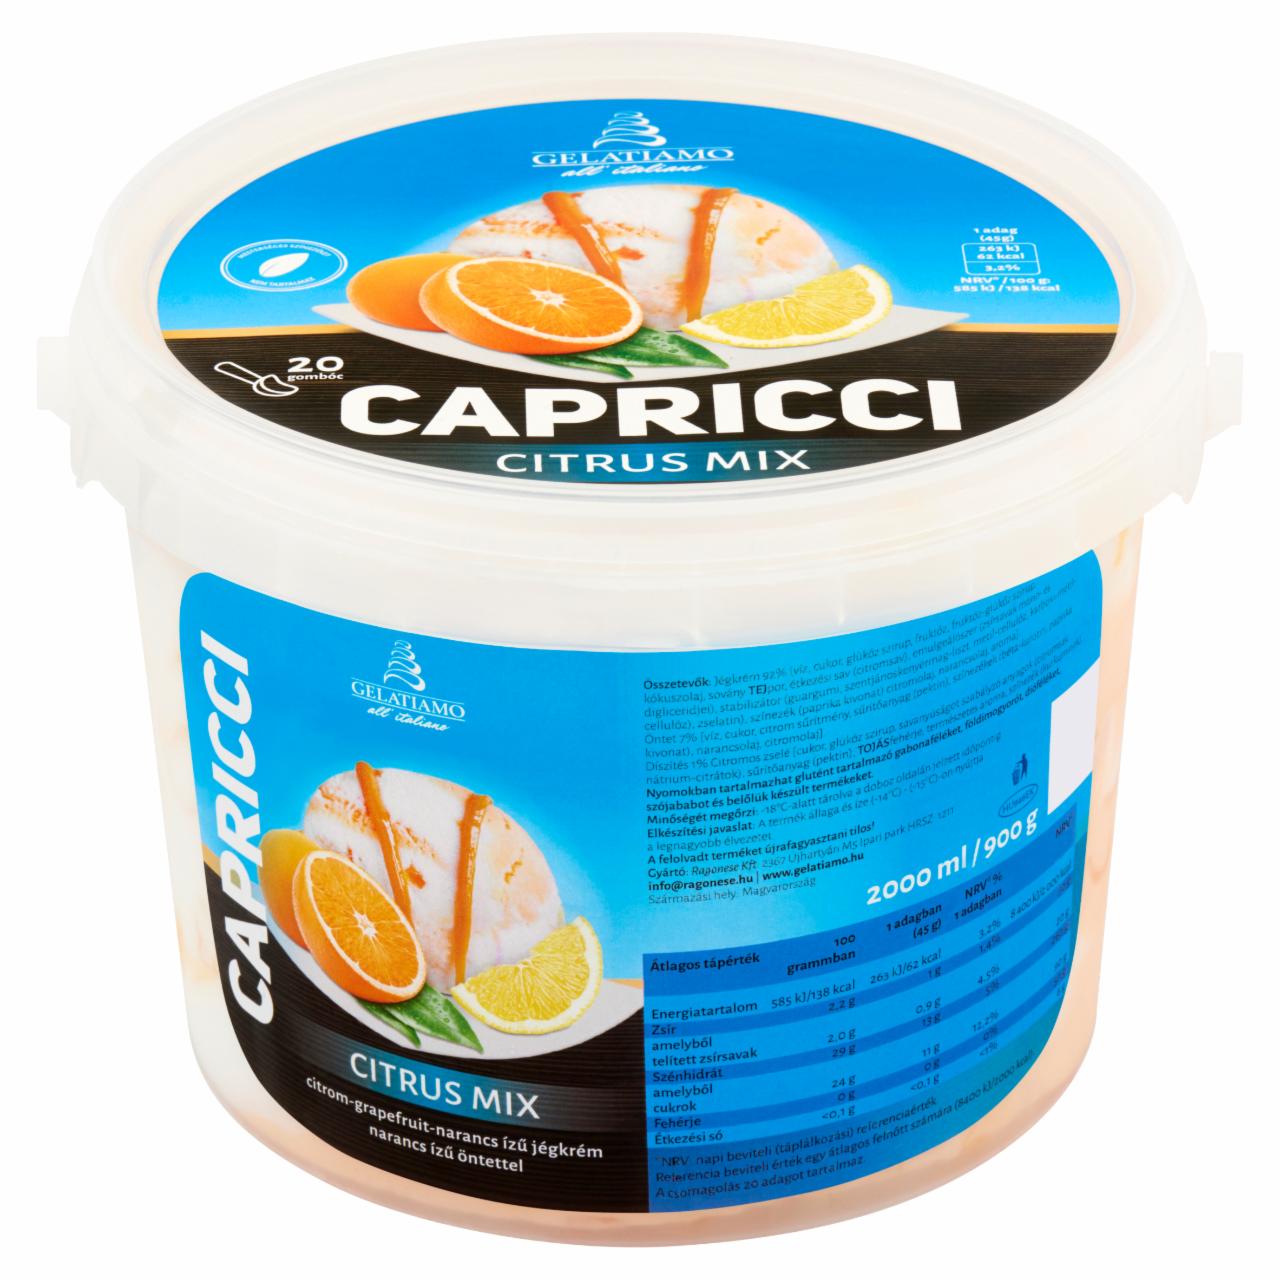 Képek - Gelatiamo Capricci Citrus Mix citrom-grapefruit-narancs ízű jégkrém narancs ízű öntettel 2000 ml